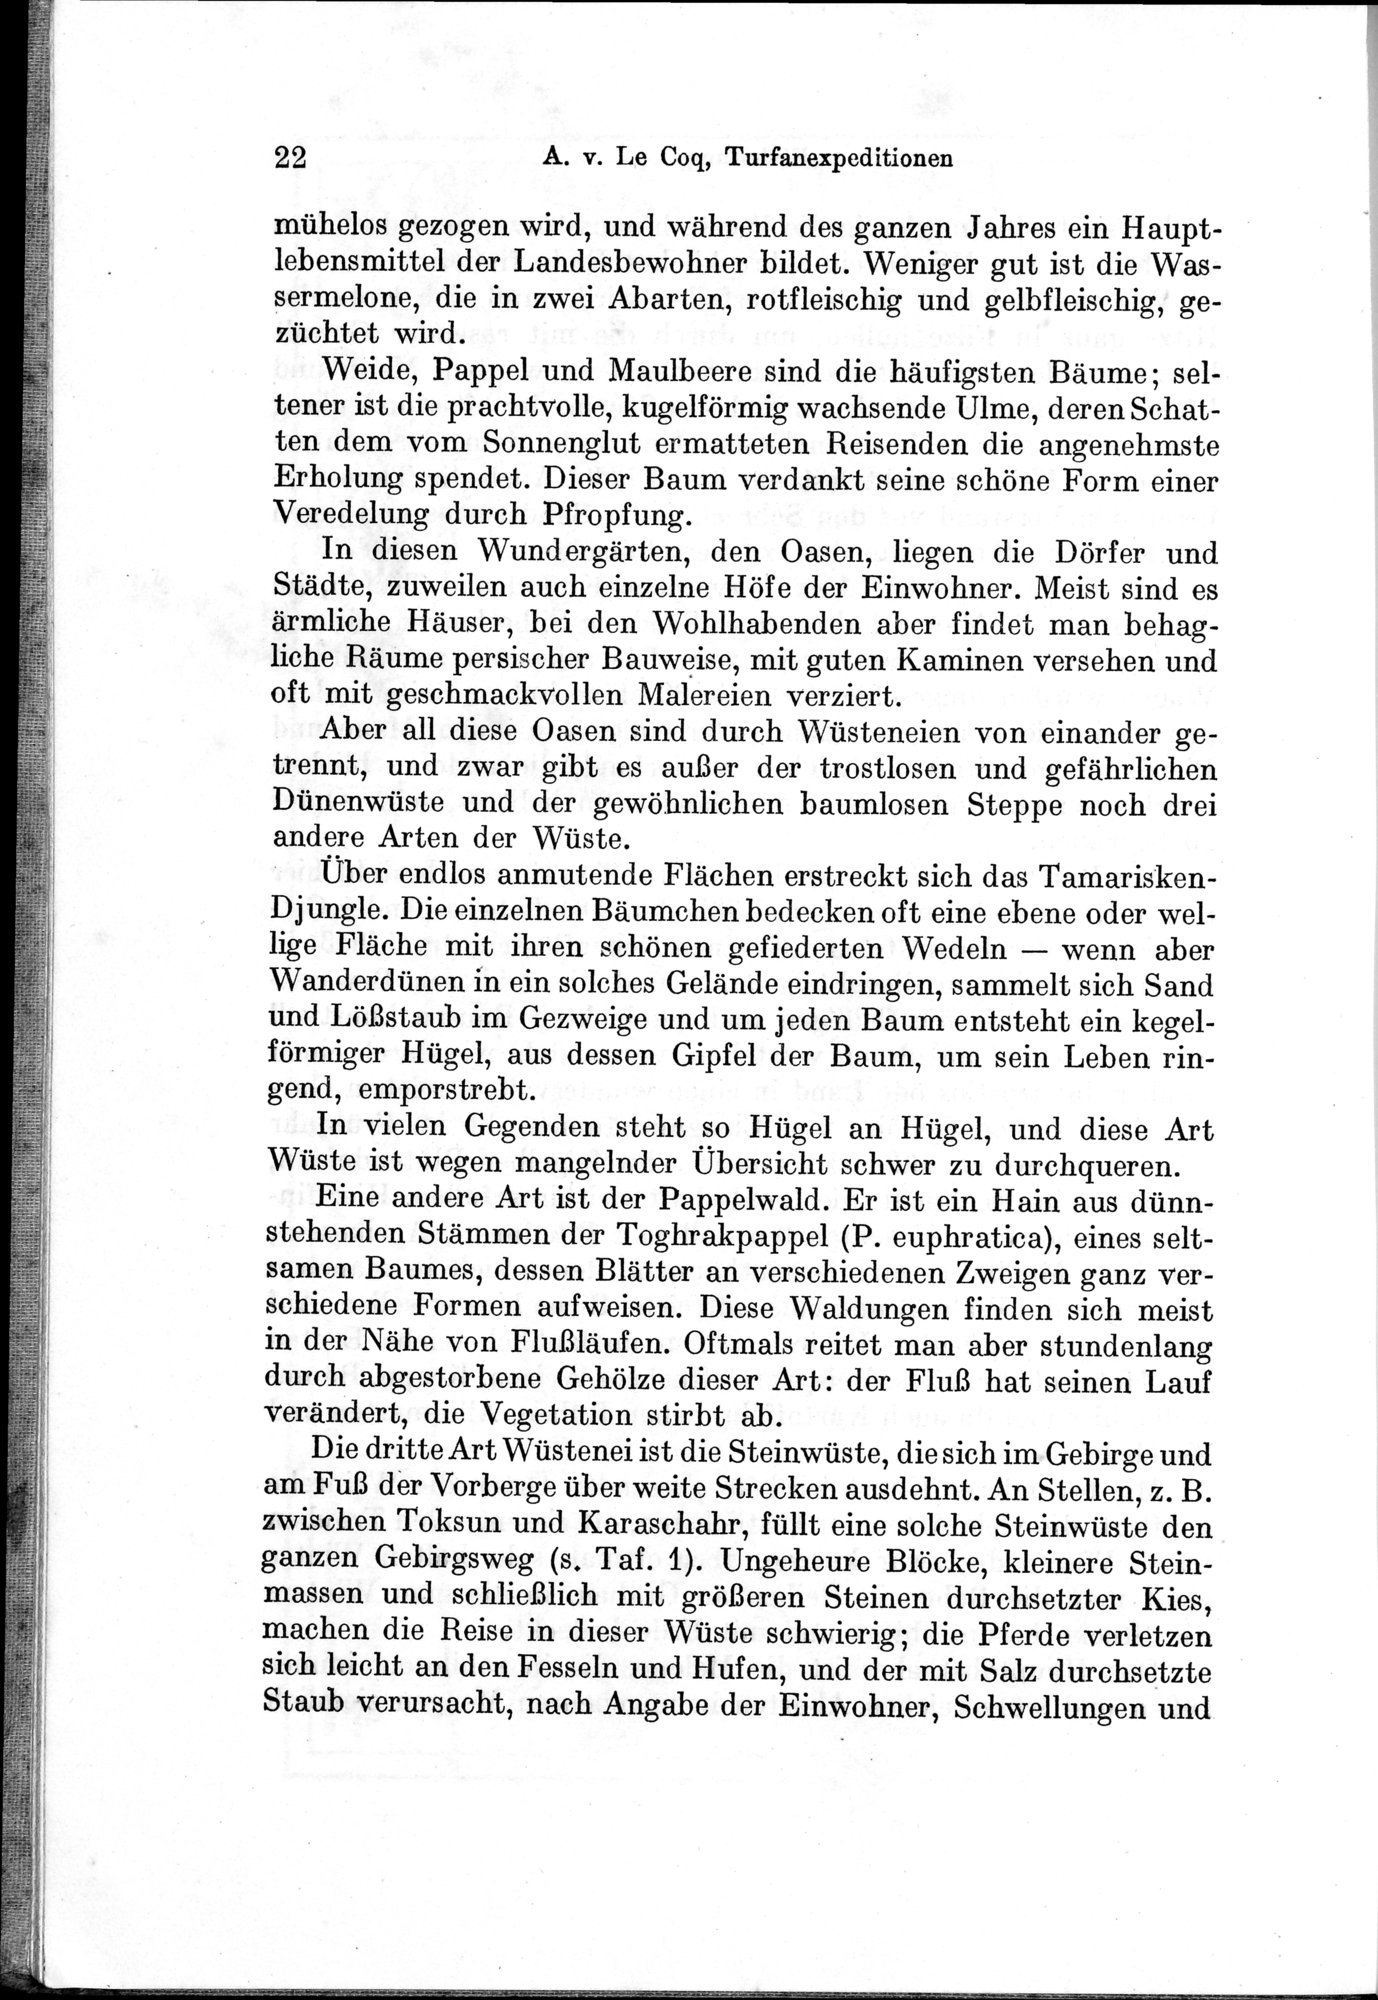 Auf Hellas Spuren in Ostturkistan : vol.1 / Page 38 (Grayscale High Resolution Image)